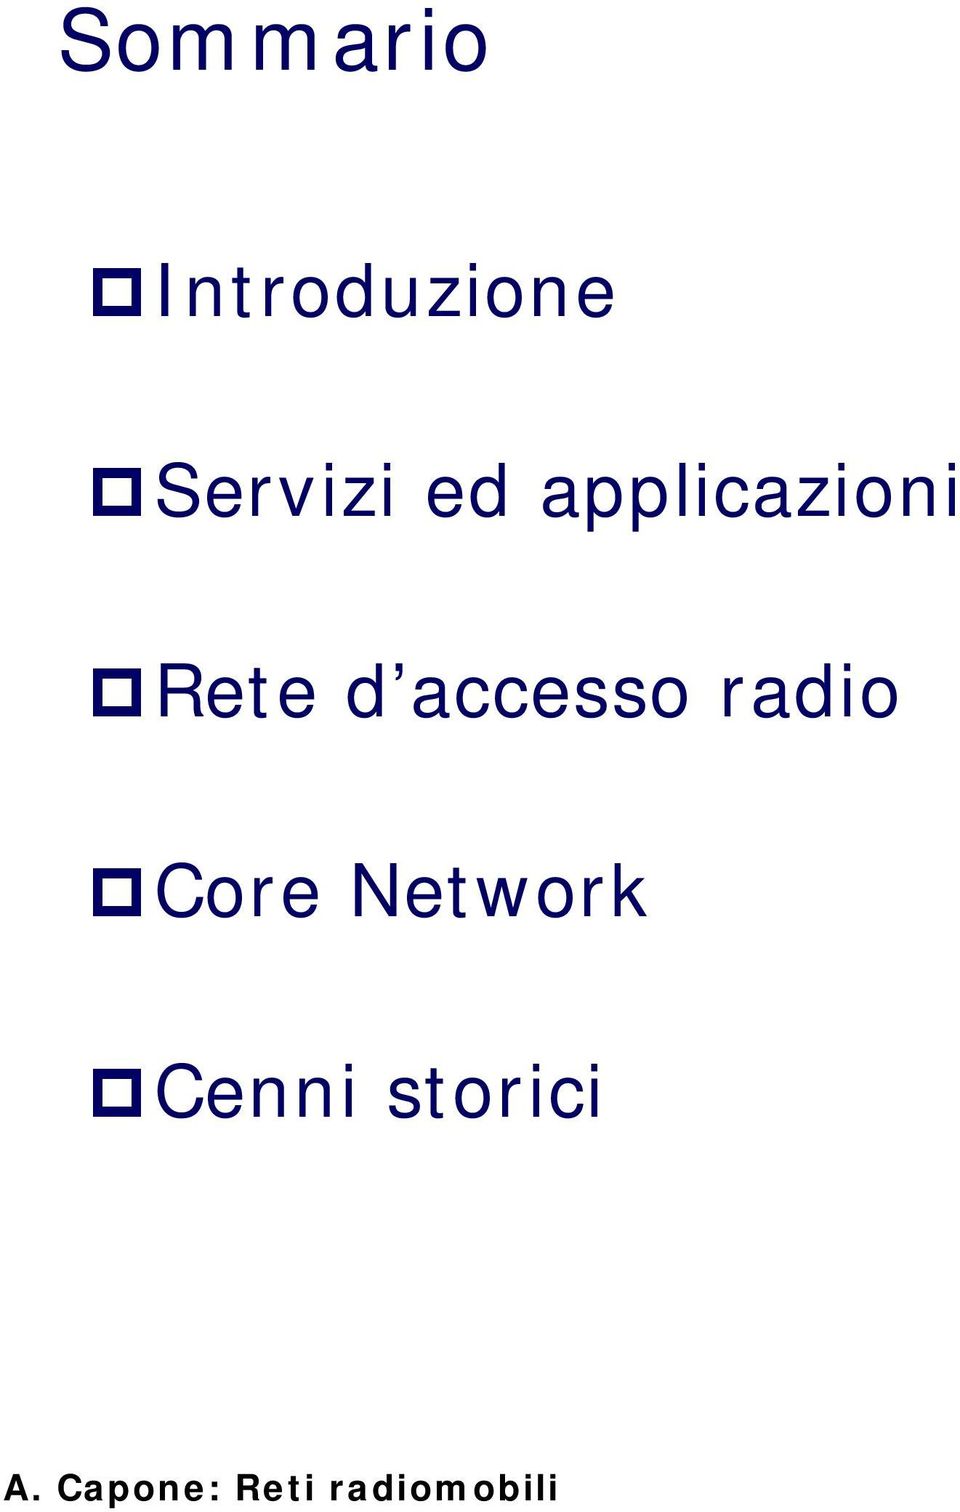 radio Core Network Cenni